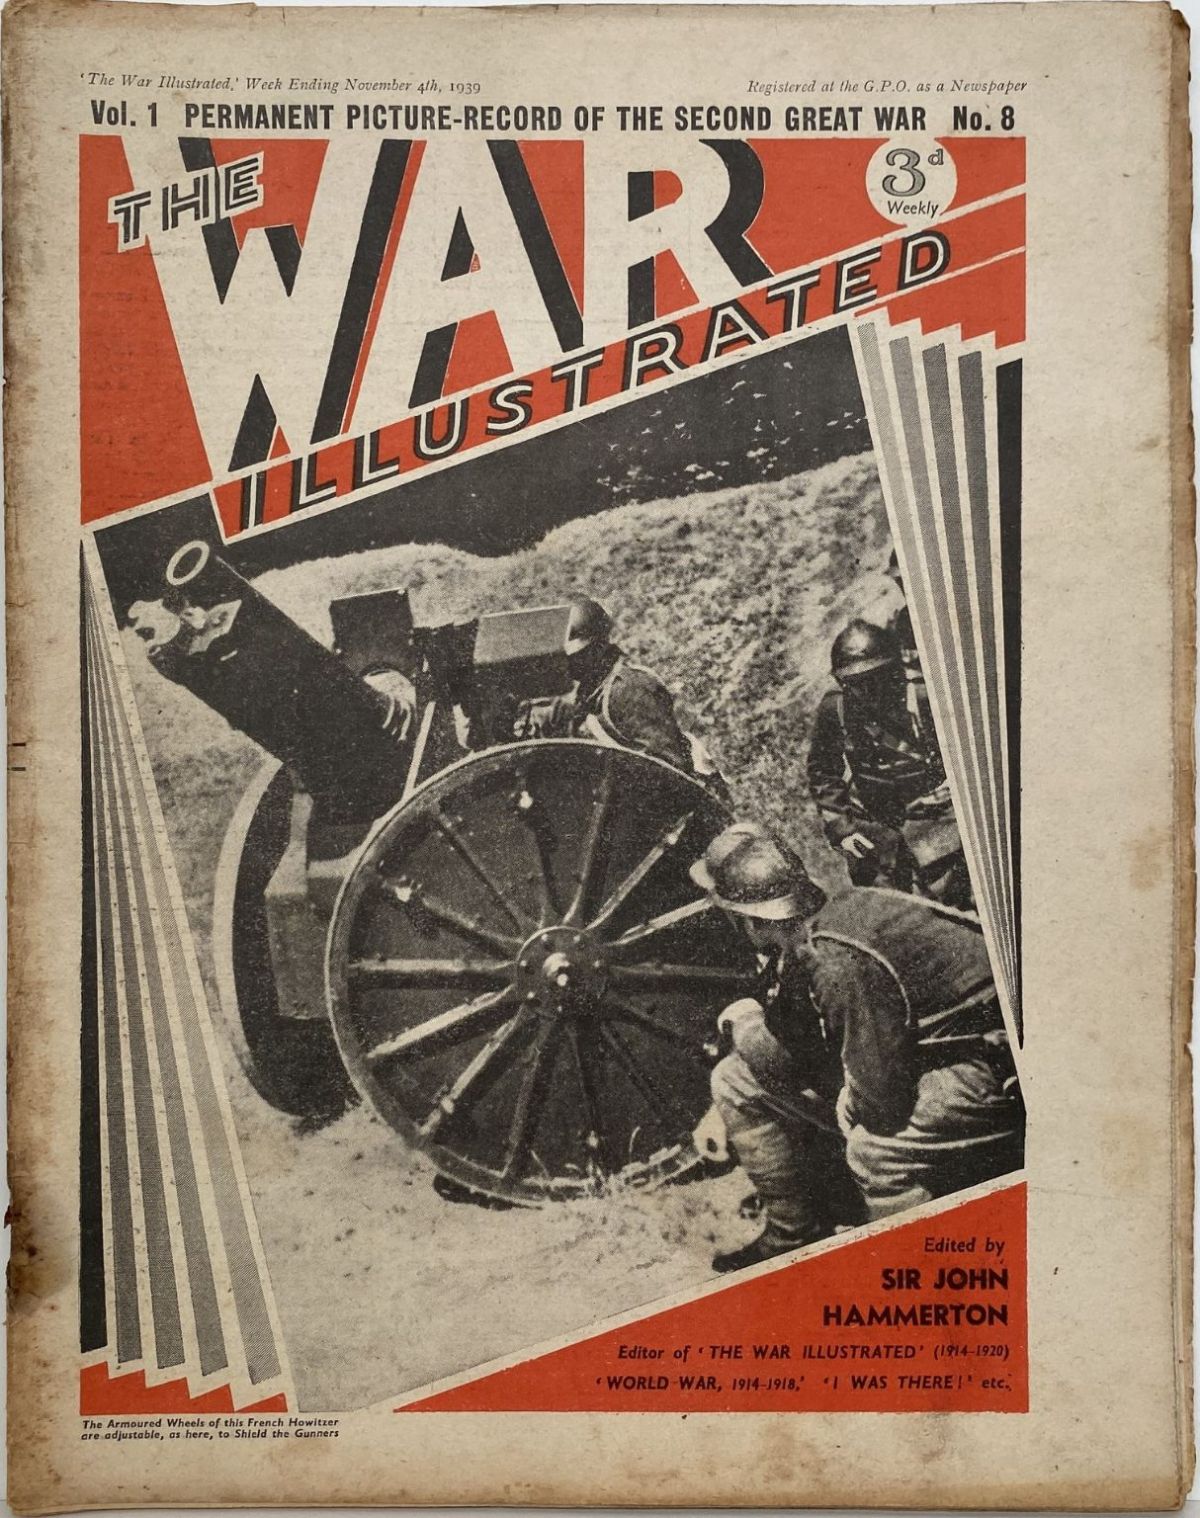 THE WAR ILLUSTRATED - Vol 1, No 8, 4th Nov 1939